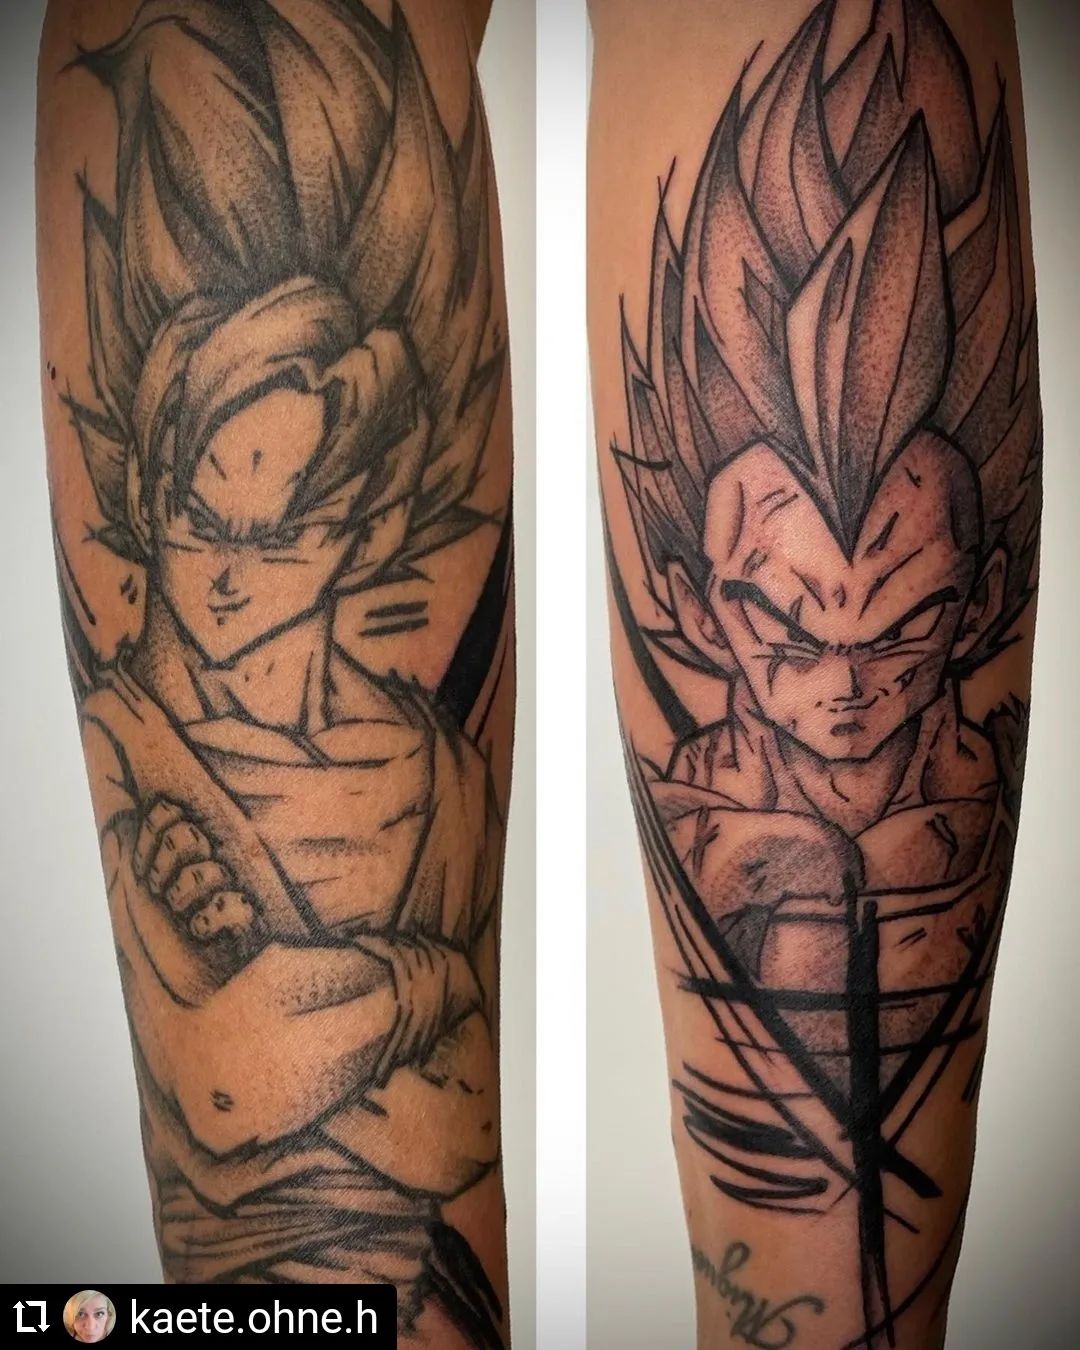 Neu von @kaete.ohne.h
...
Son Goku und Vegeta  #ink #inked #tattooartist #art #t